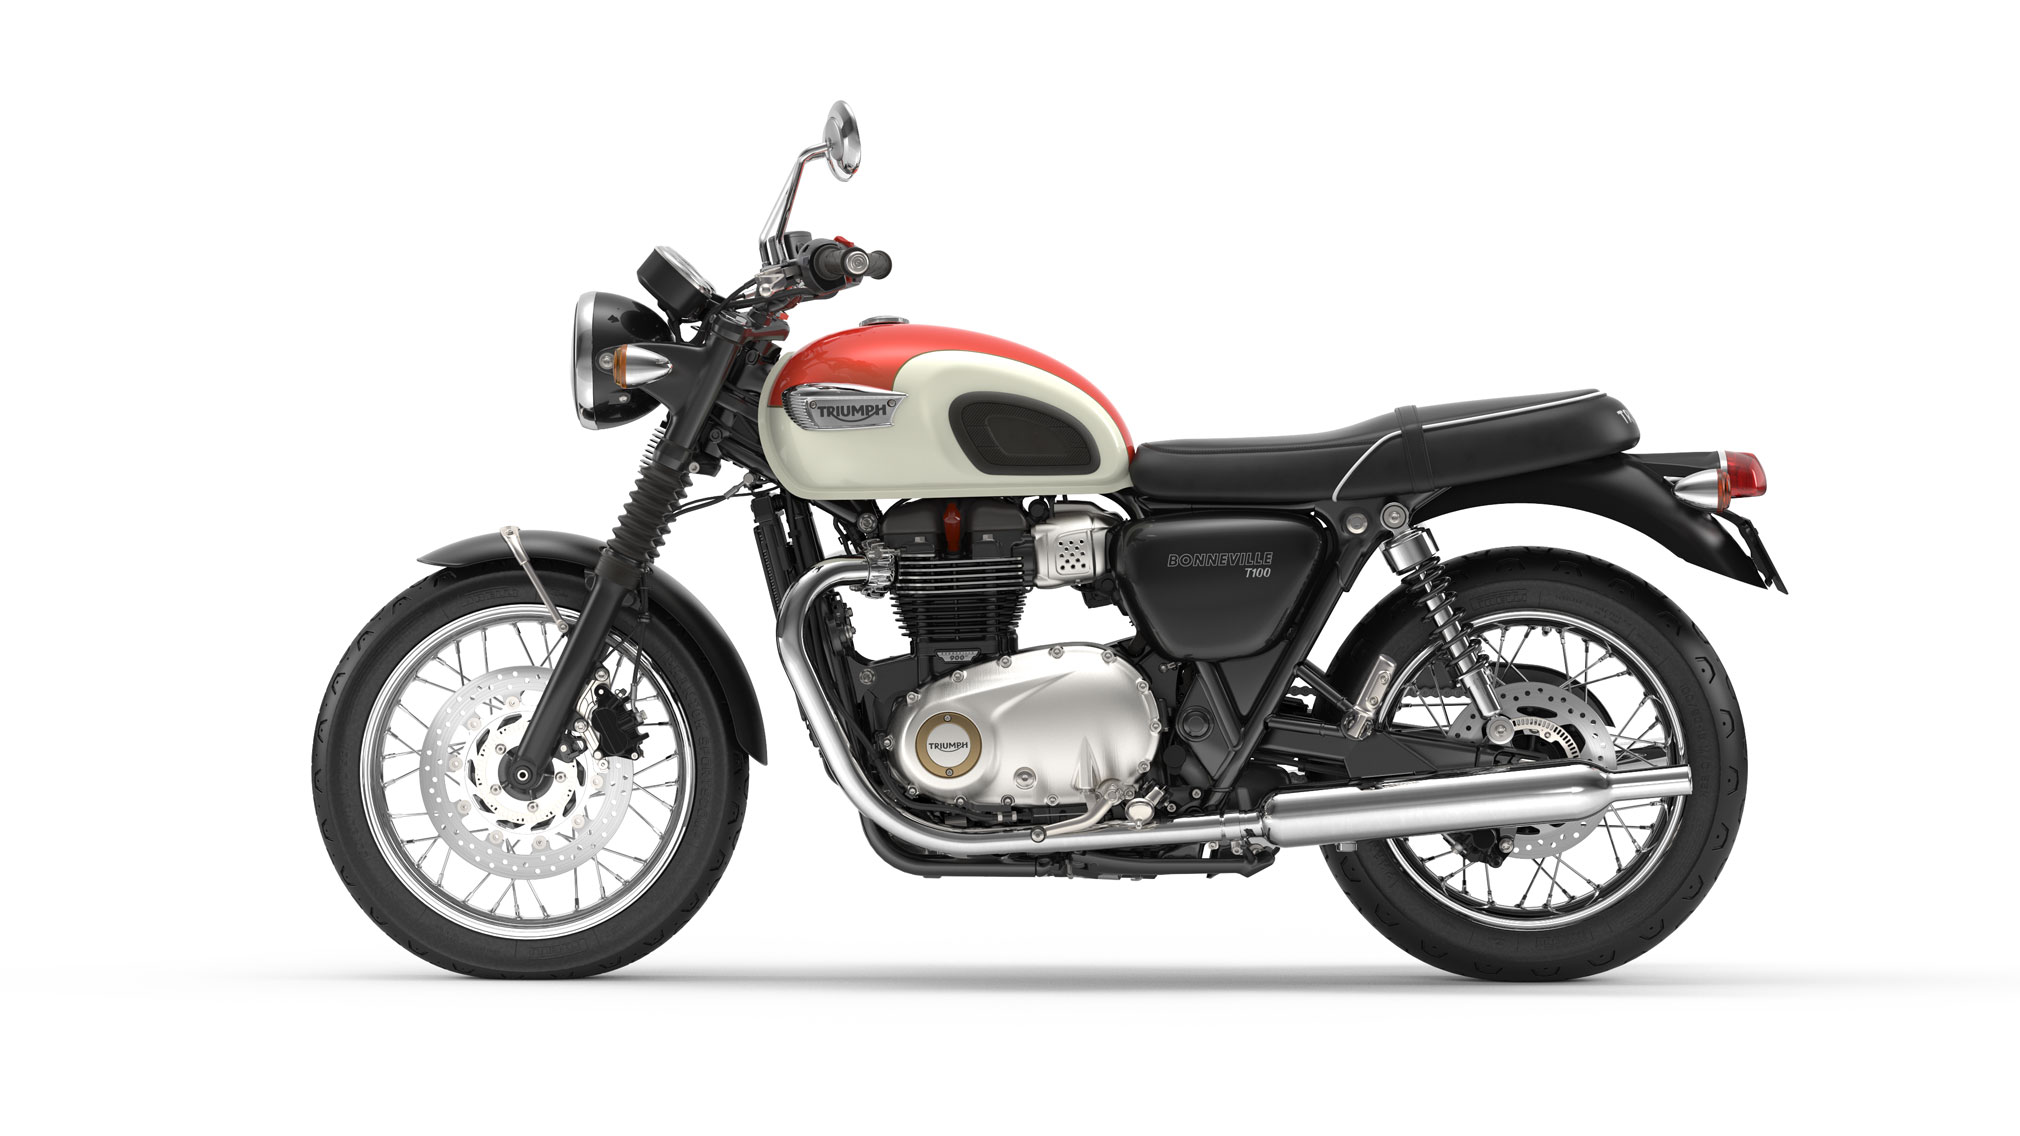 2020 Triumph Bonneville T100 Guide • Total Motorcycle